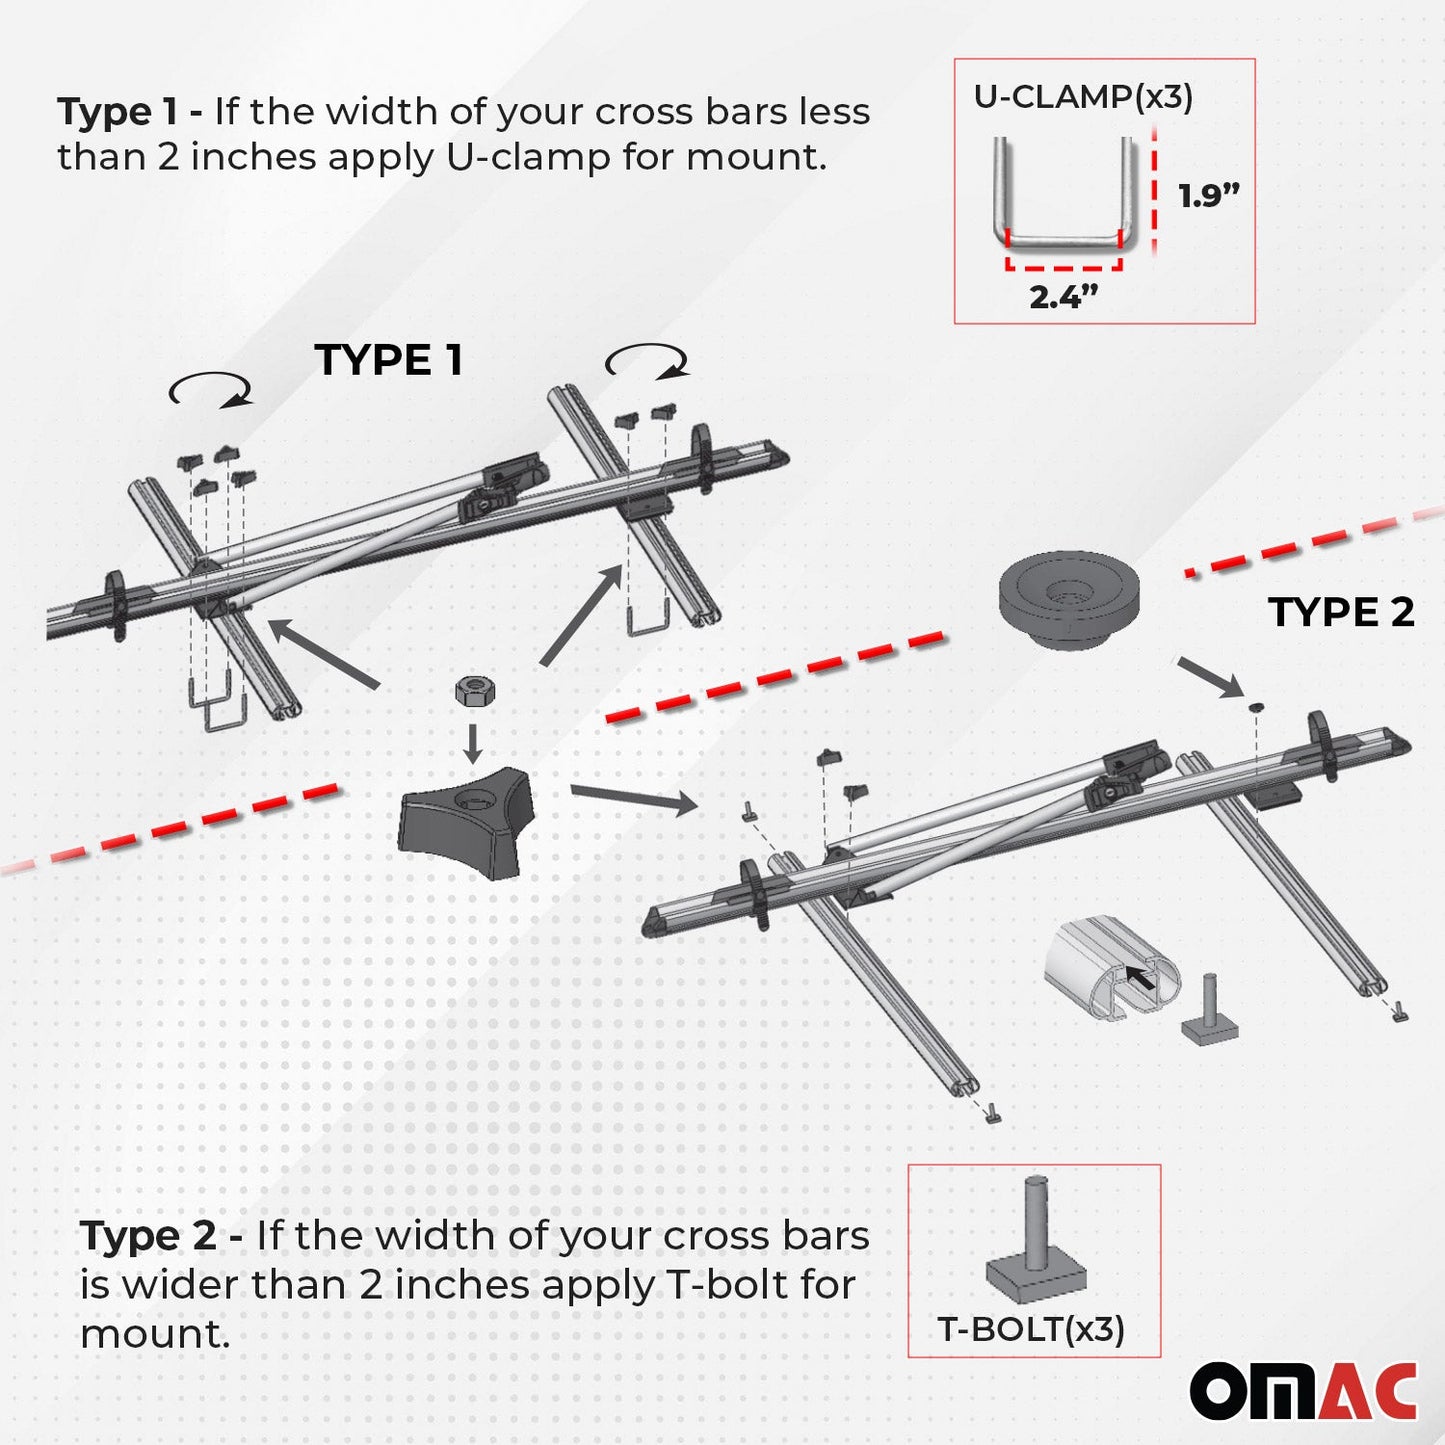 OMAC Bike Rack Carrier Roof Racks Set for Toyota RAV4 2013-2018 Black 3x U020742